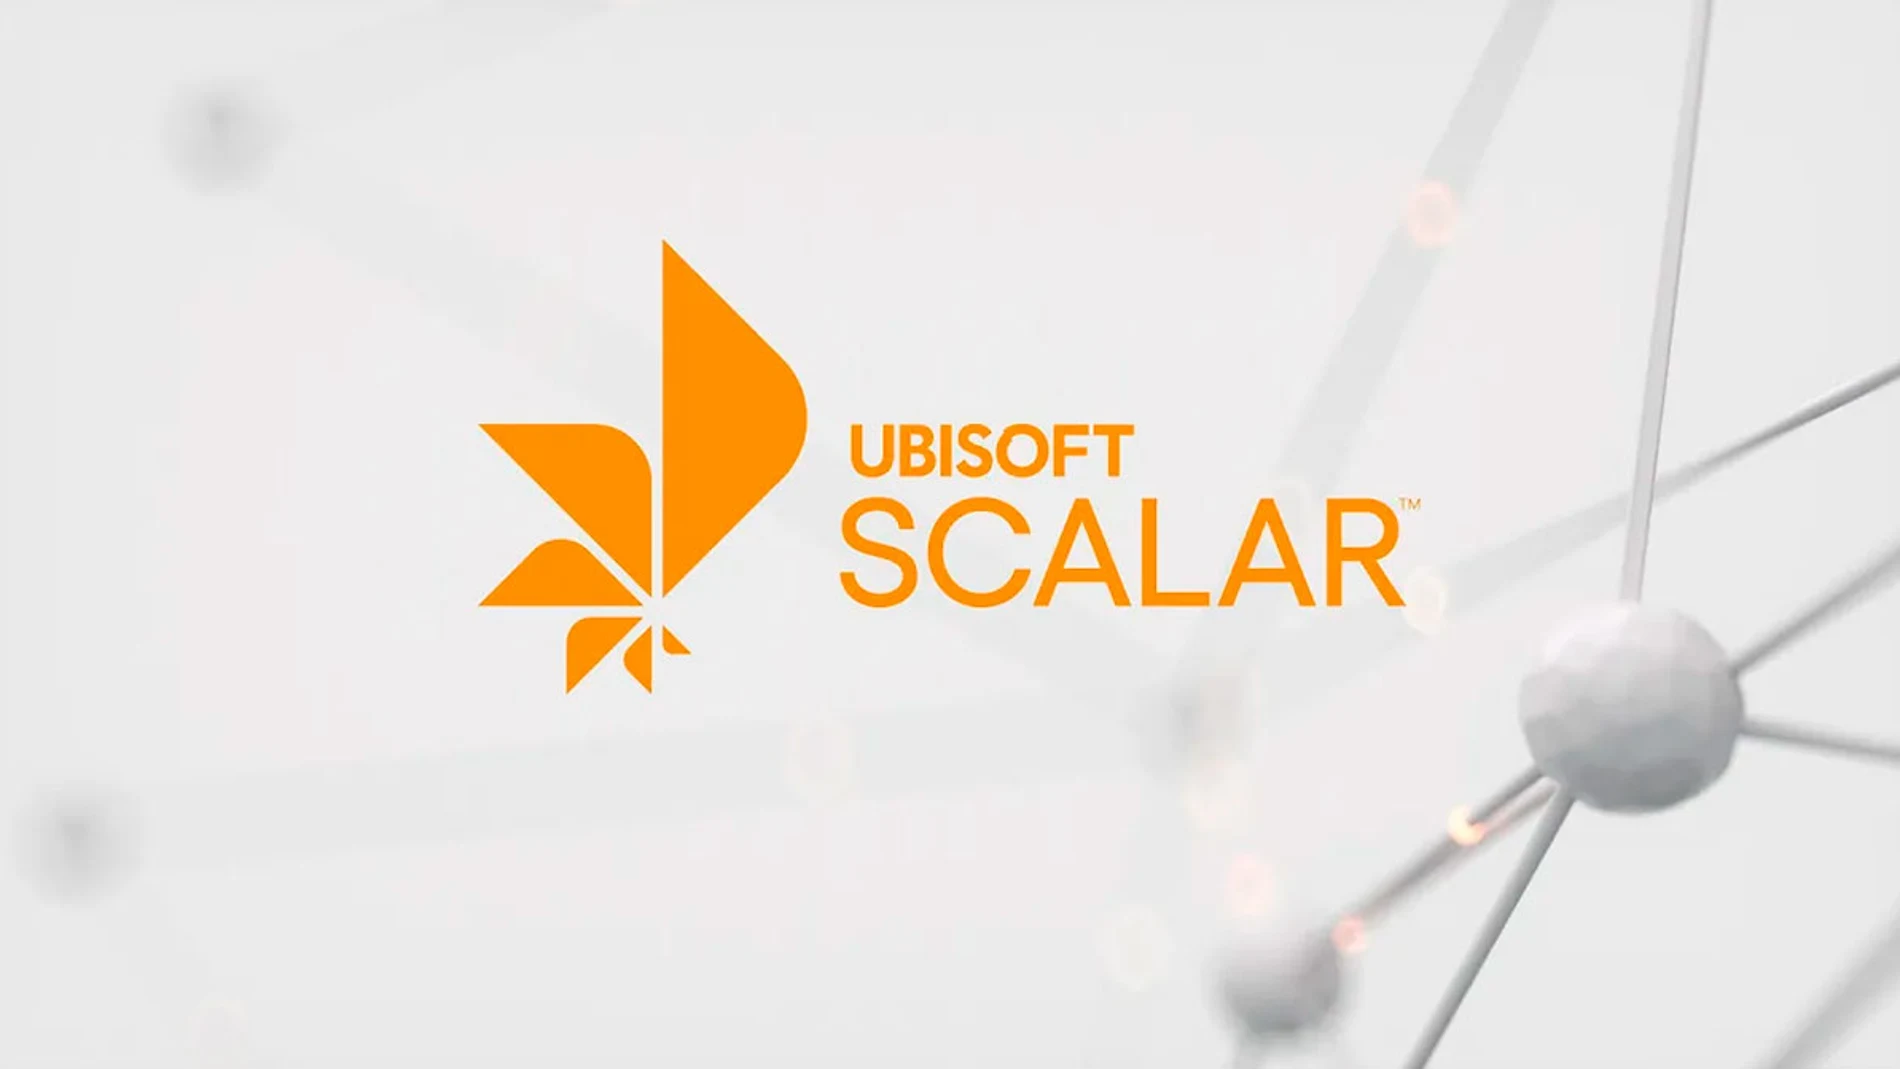 Logotipo de la nueva tecnología con la que Ubisoft quiere evolucionar el desarrollo de videojuegos.